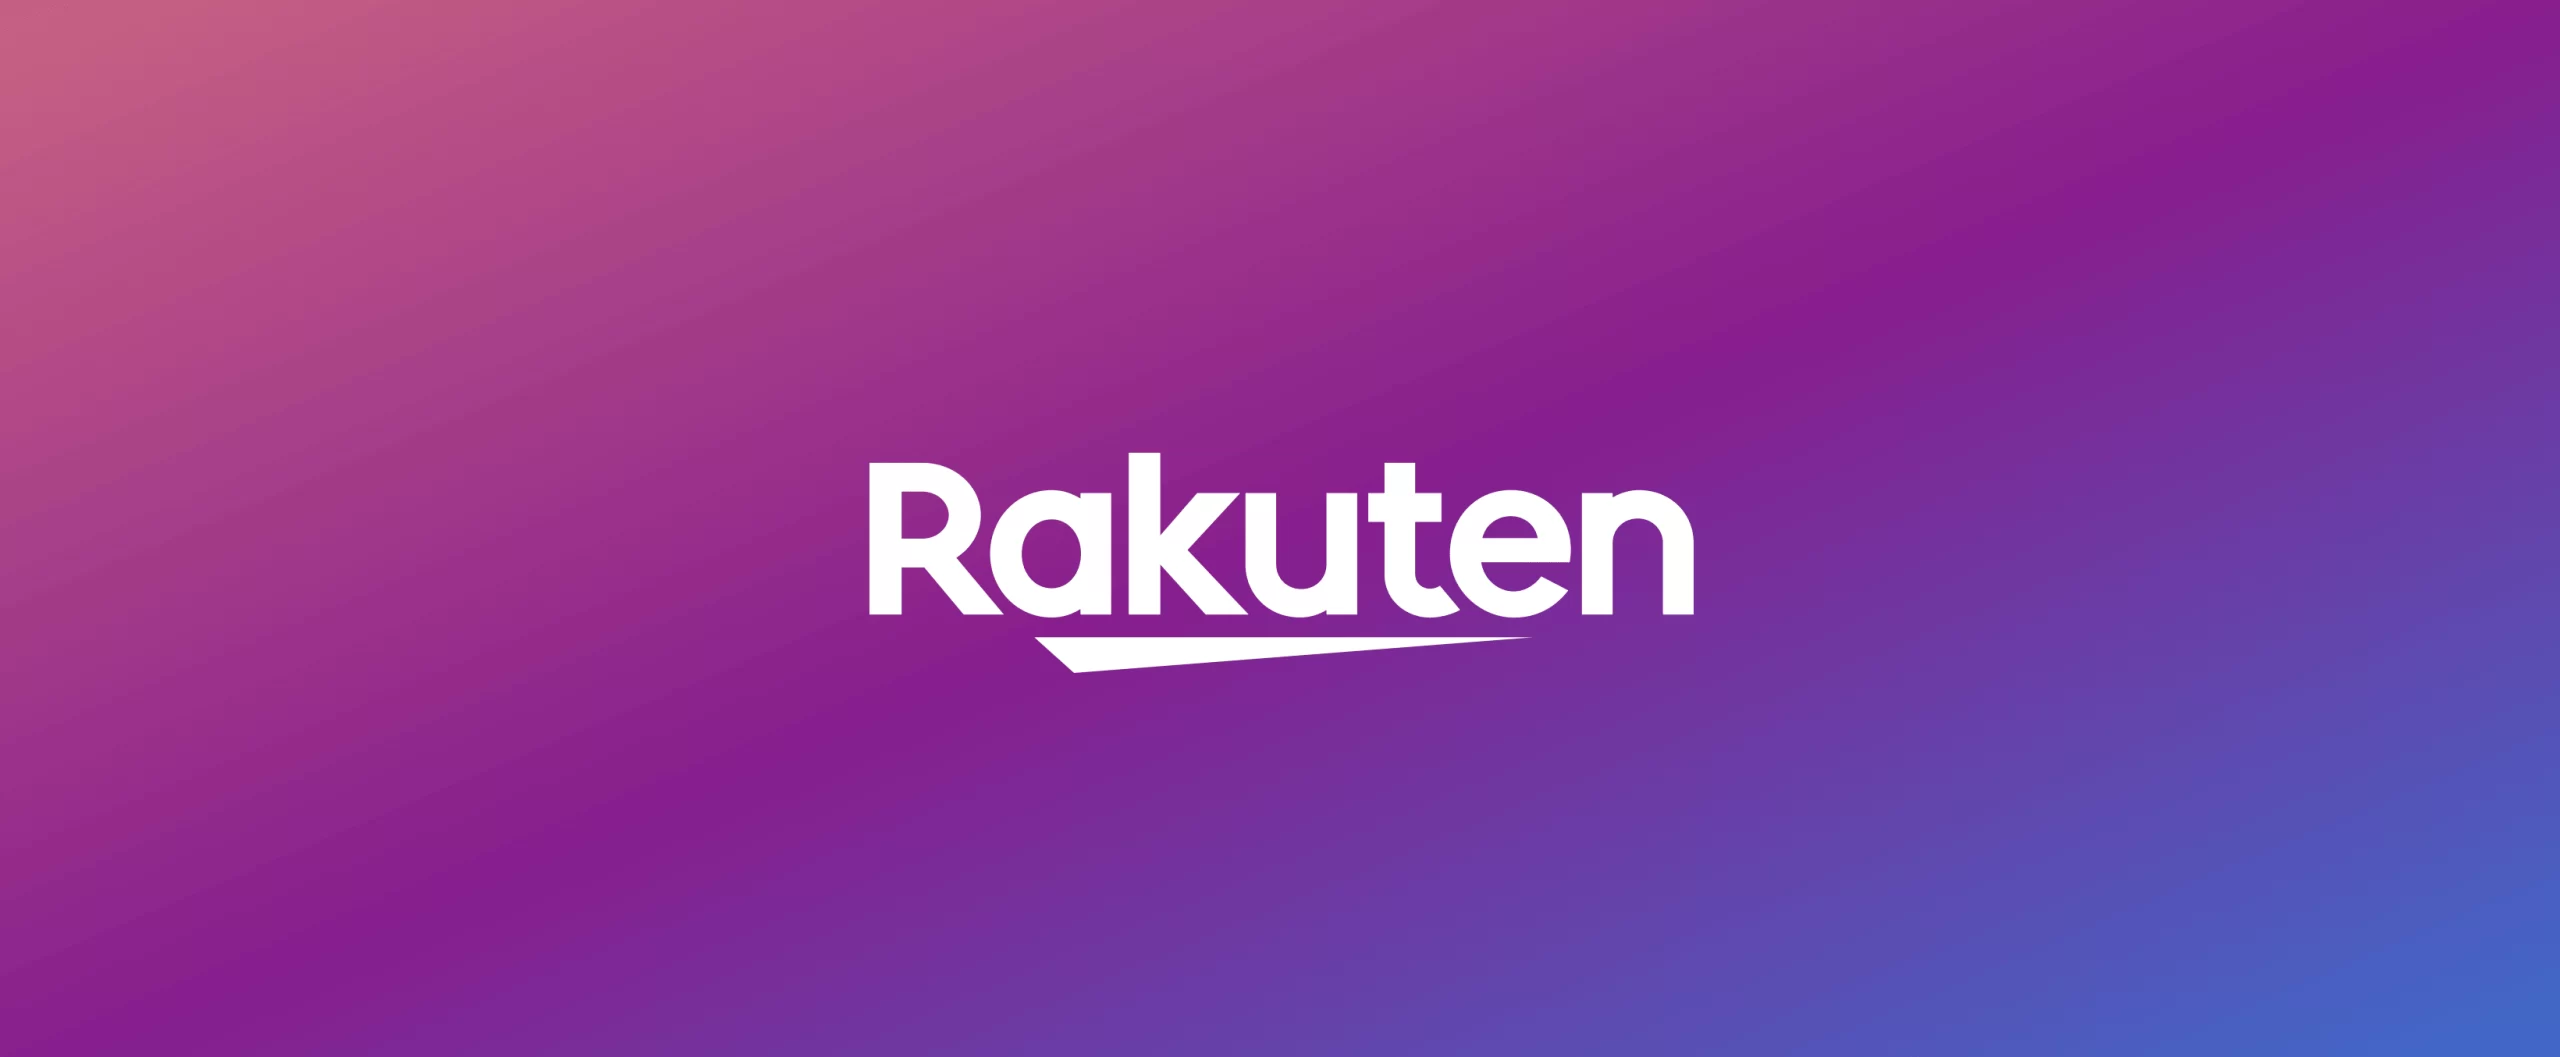 FREE $40 Cash Back from Rakuten